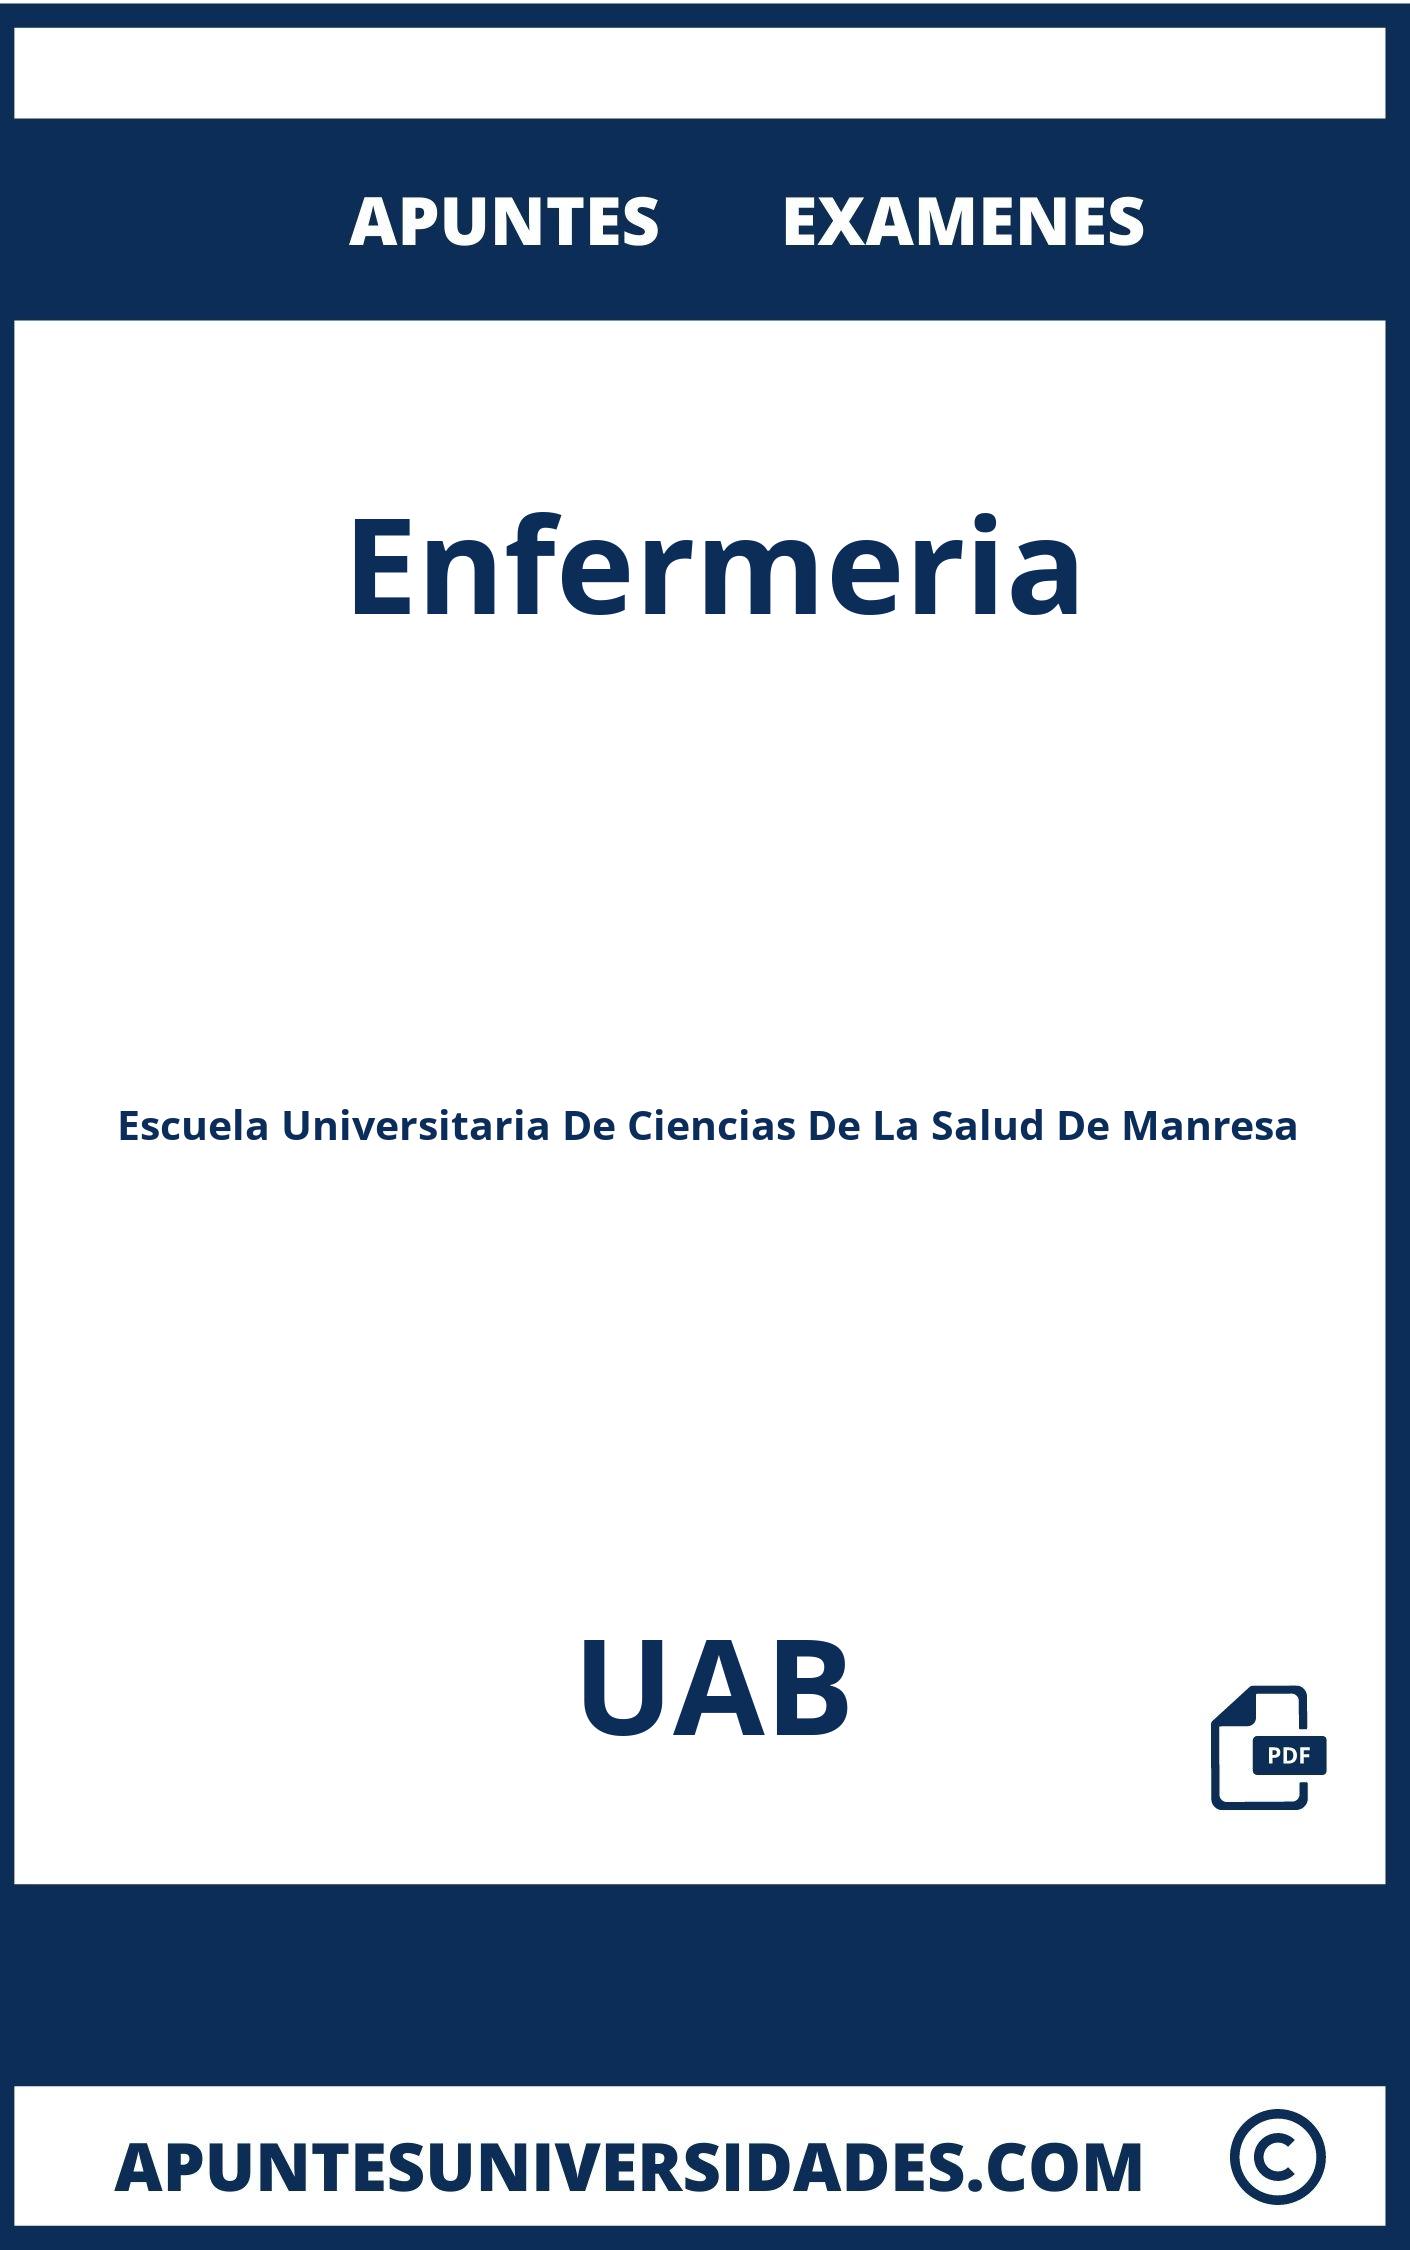 Apuntes Enfermeria UAB y Examenes